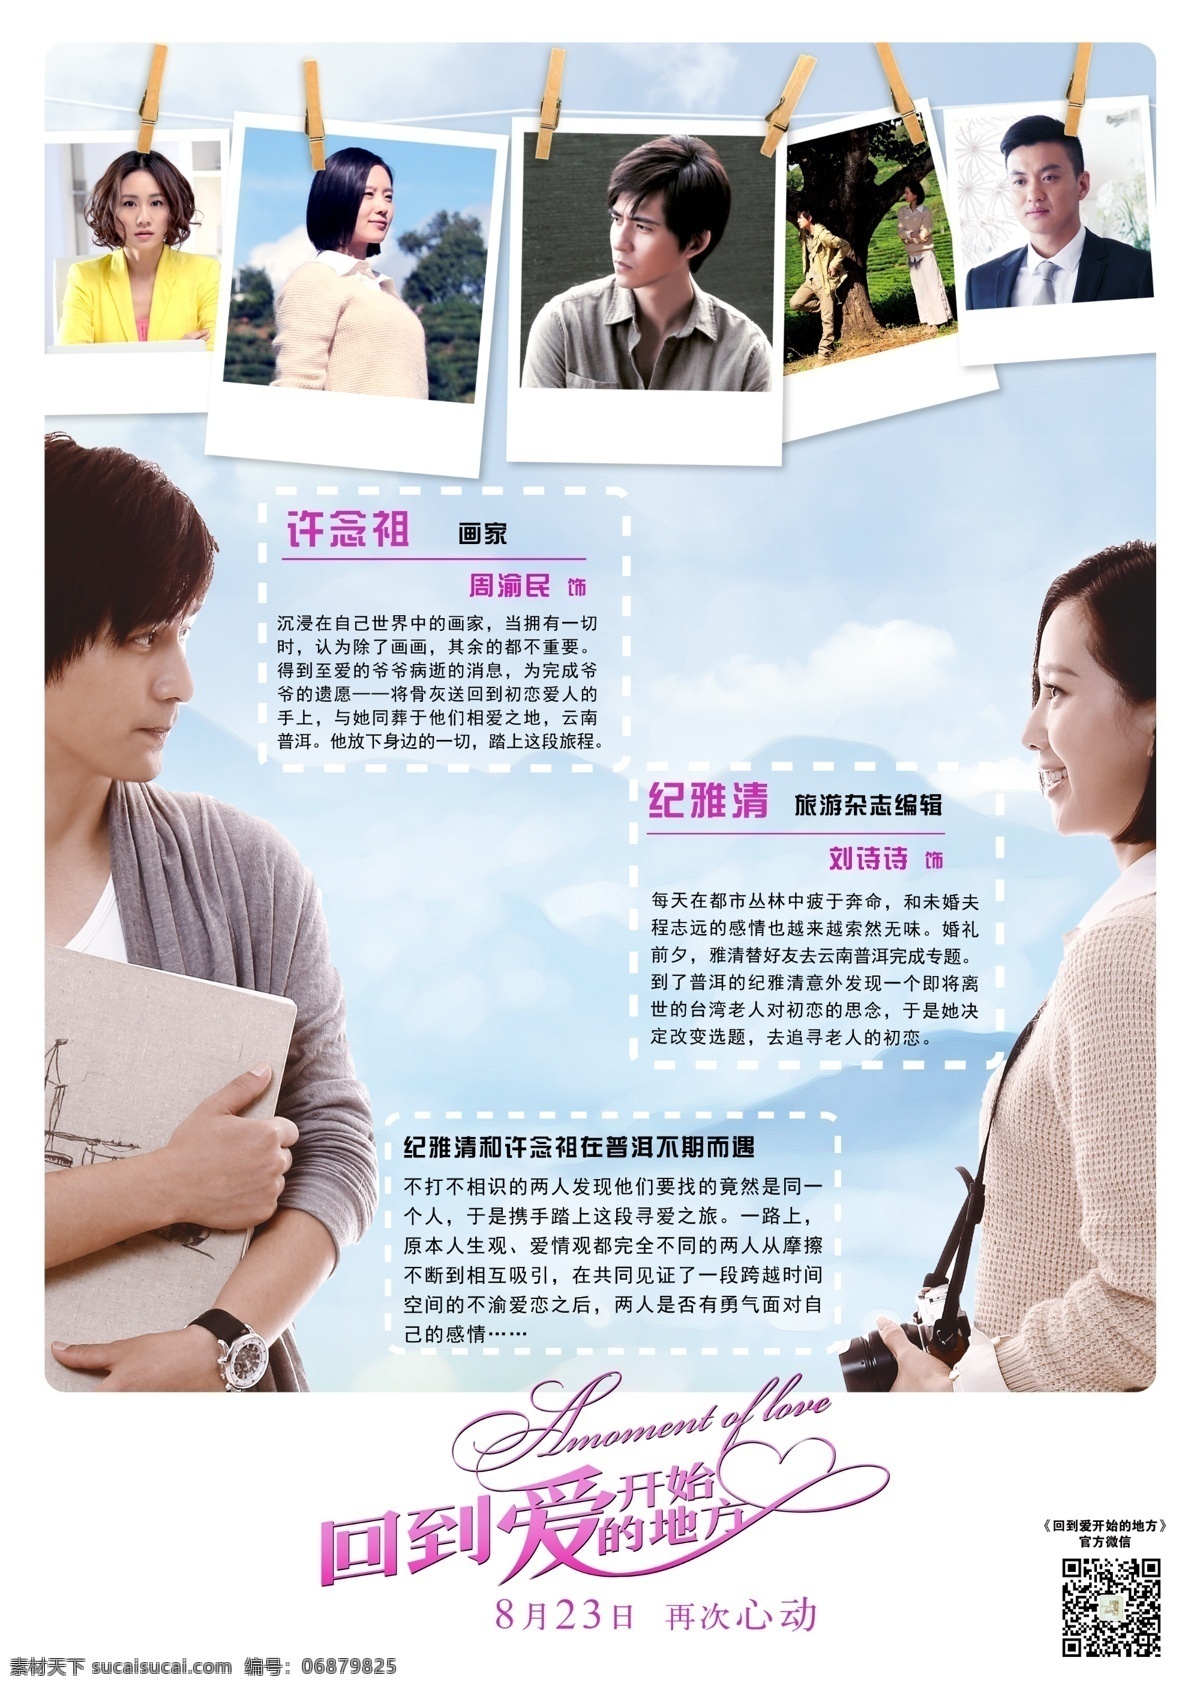 回到 爱 开始 地方 电影 周渝民 刘诗诗 照片夹 爱情 电影宣传 广告设计模板 源文件